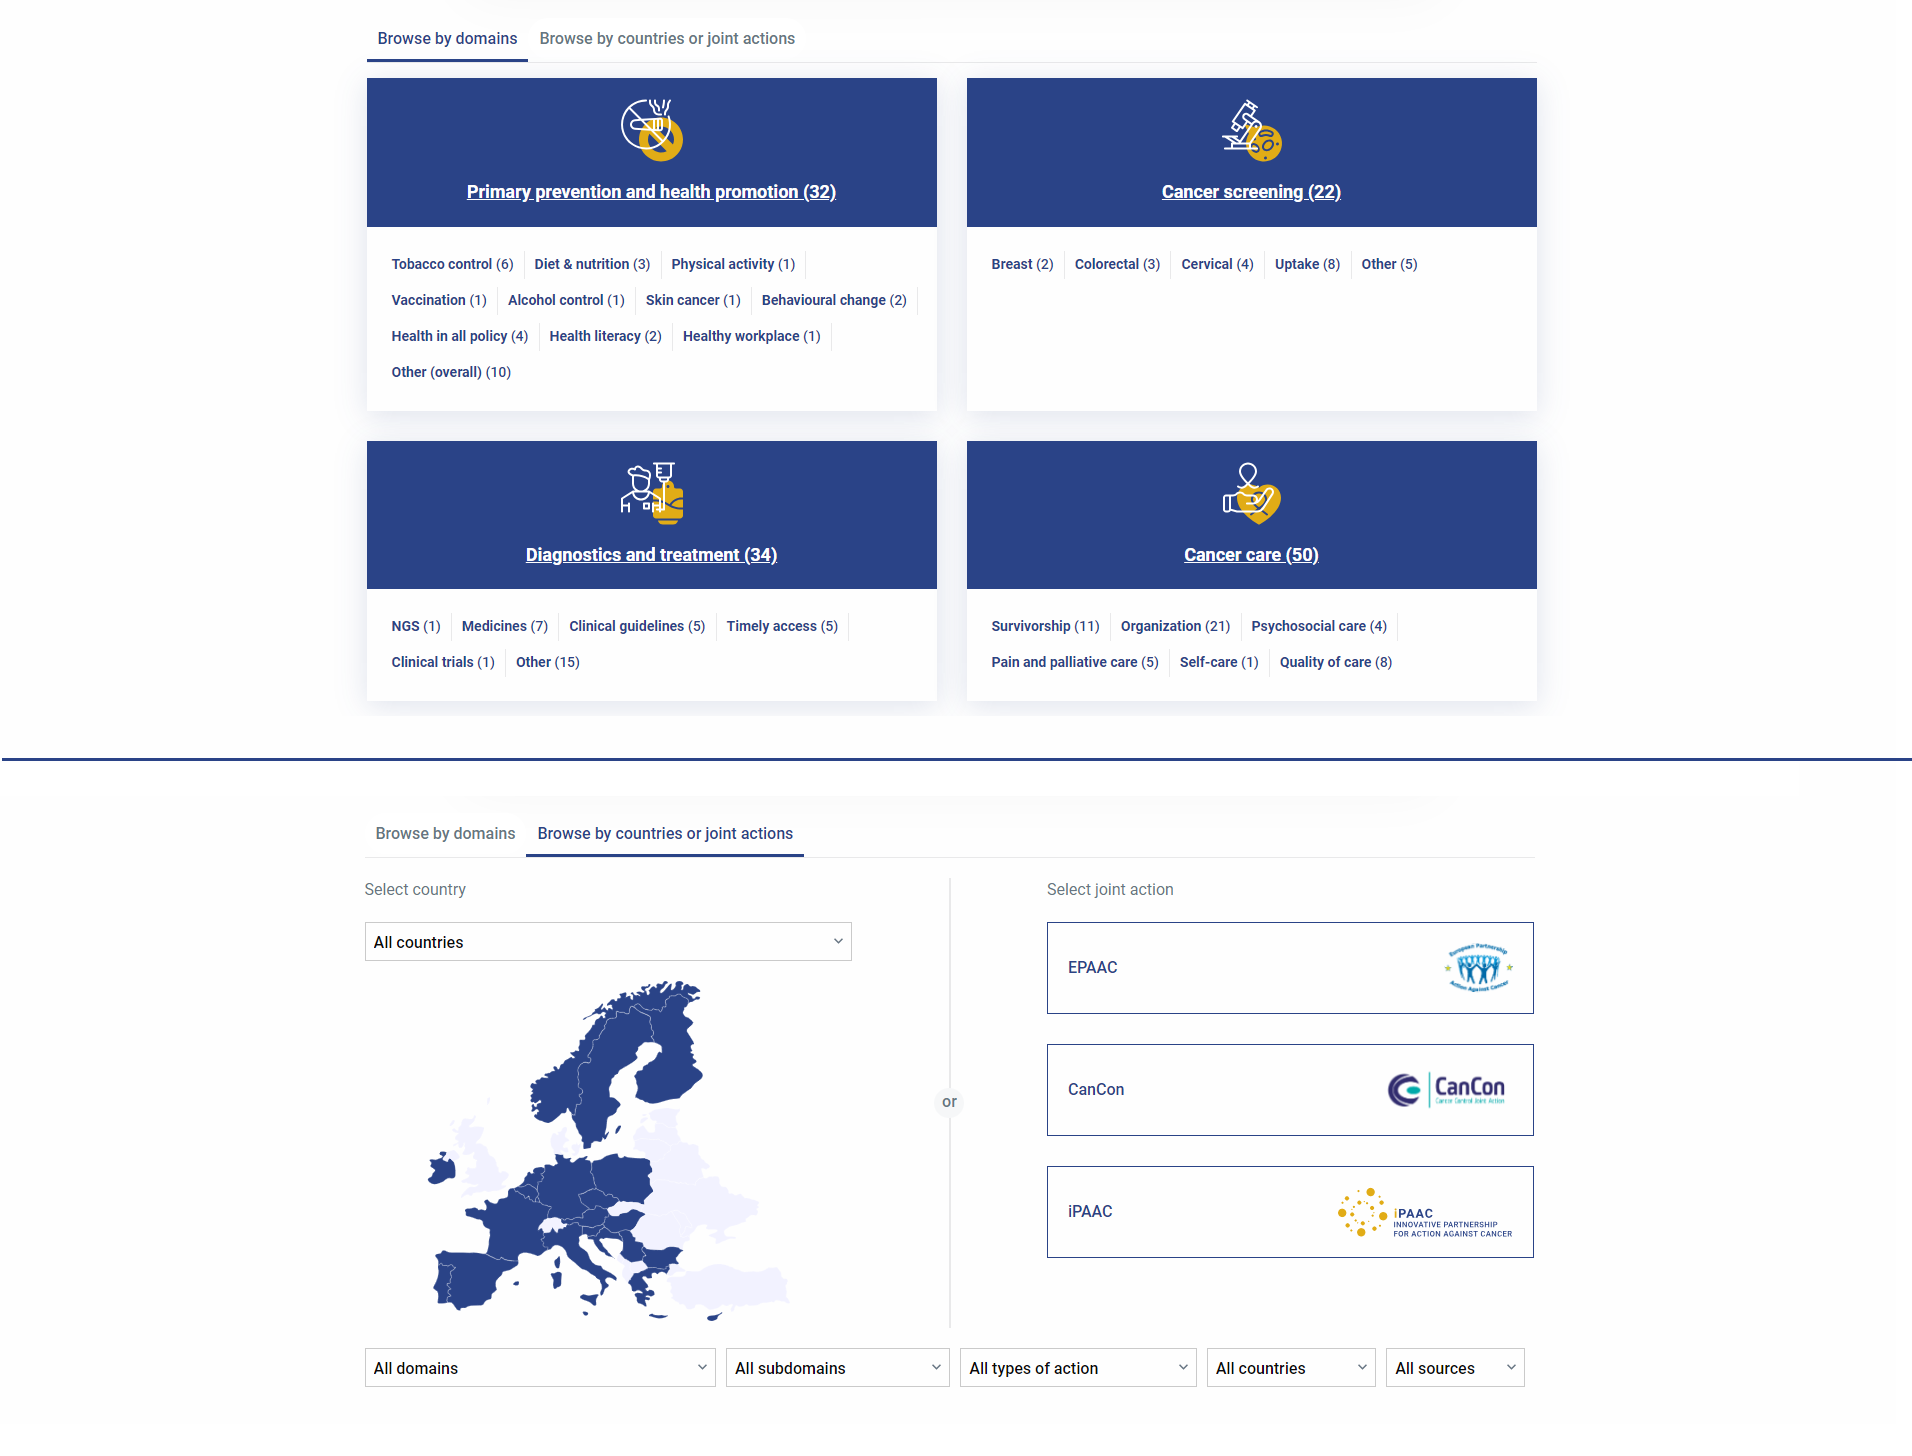 Predstavitev zaključnega izdelka Roadmap na uradni spletni strani projekta (https://www.ipaac.eu/roadmap/)